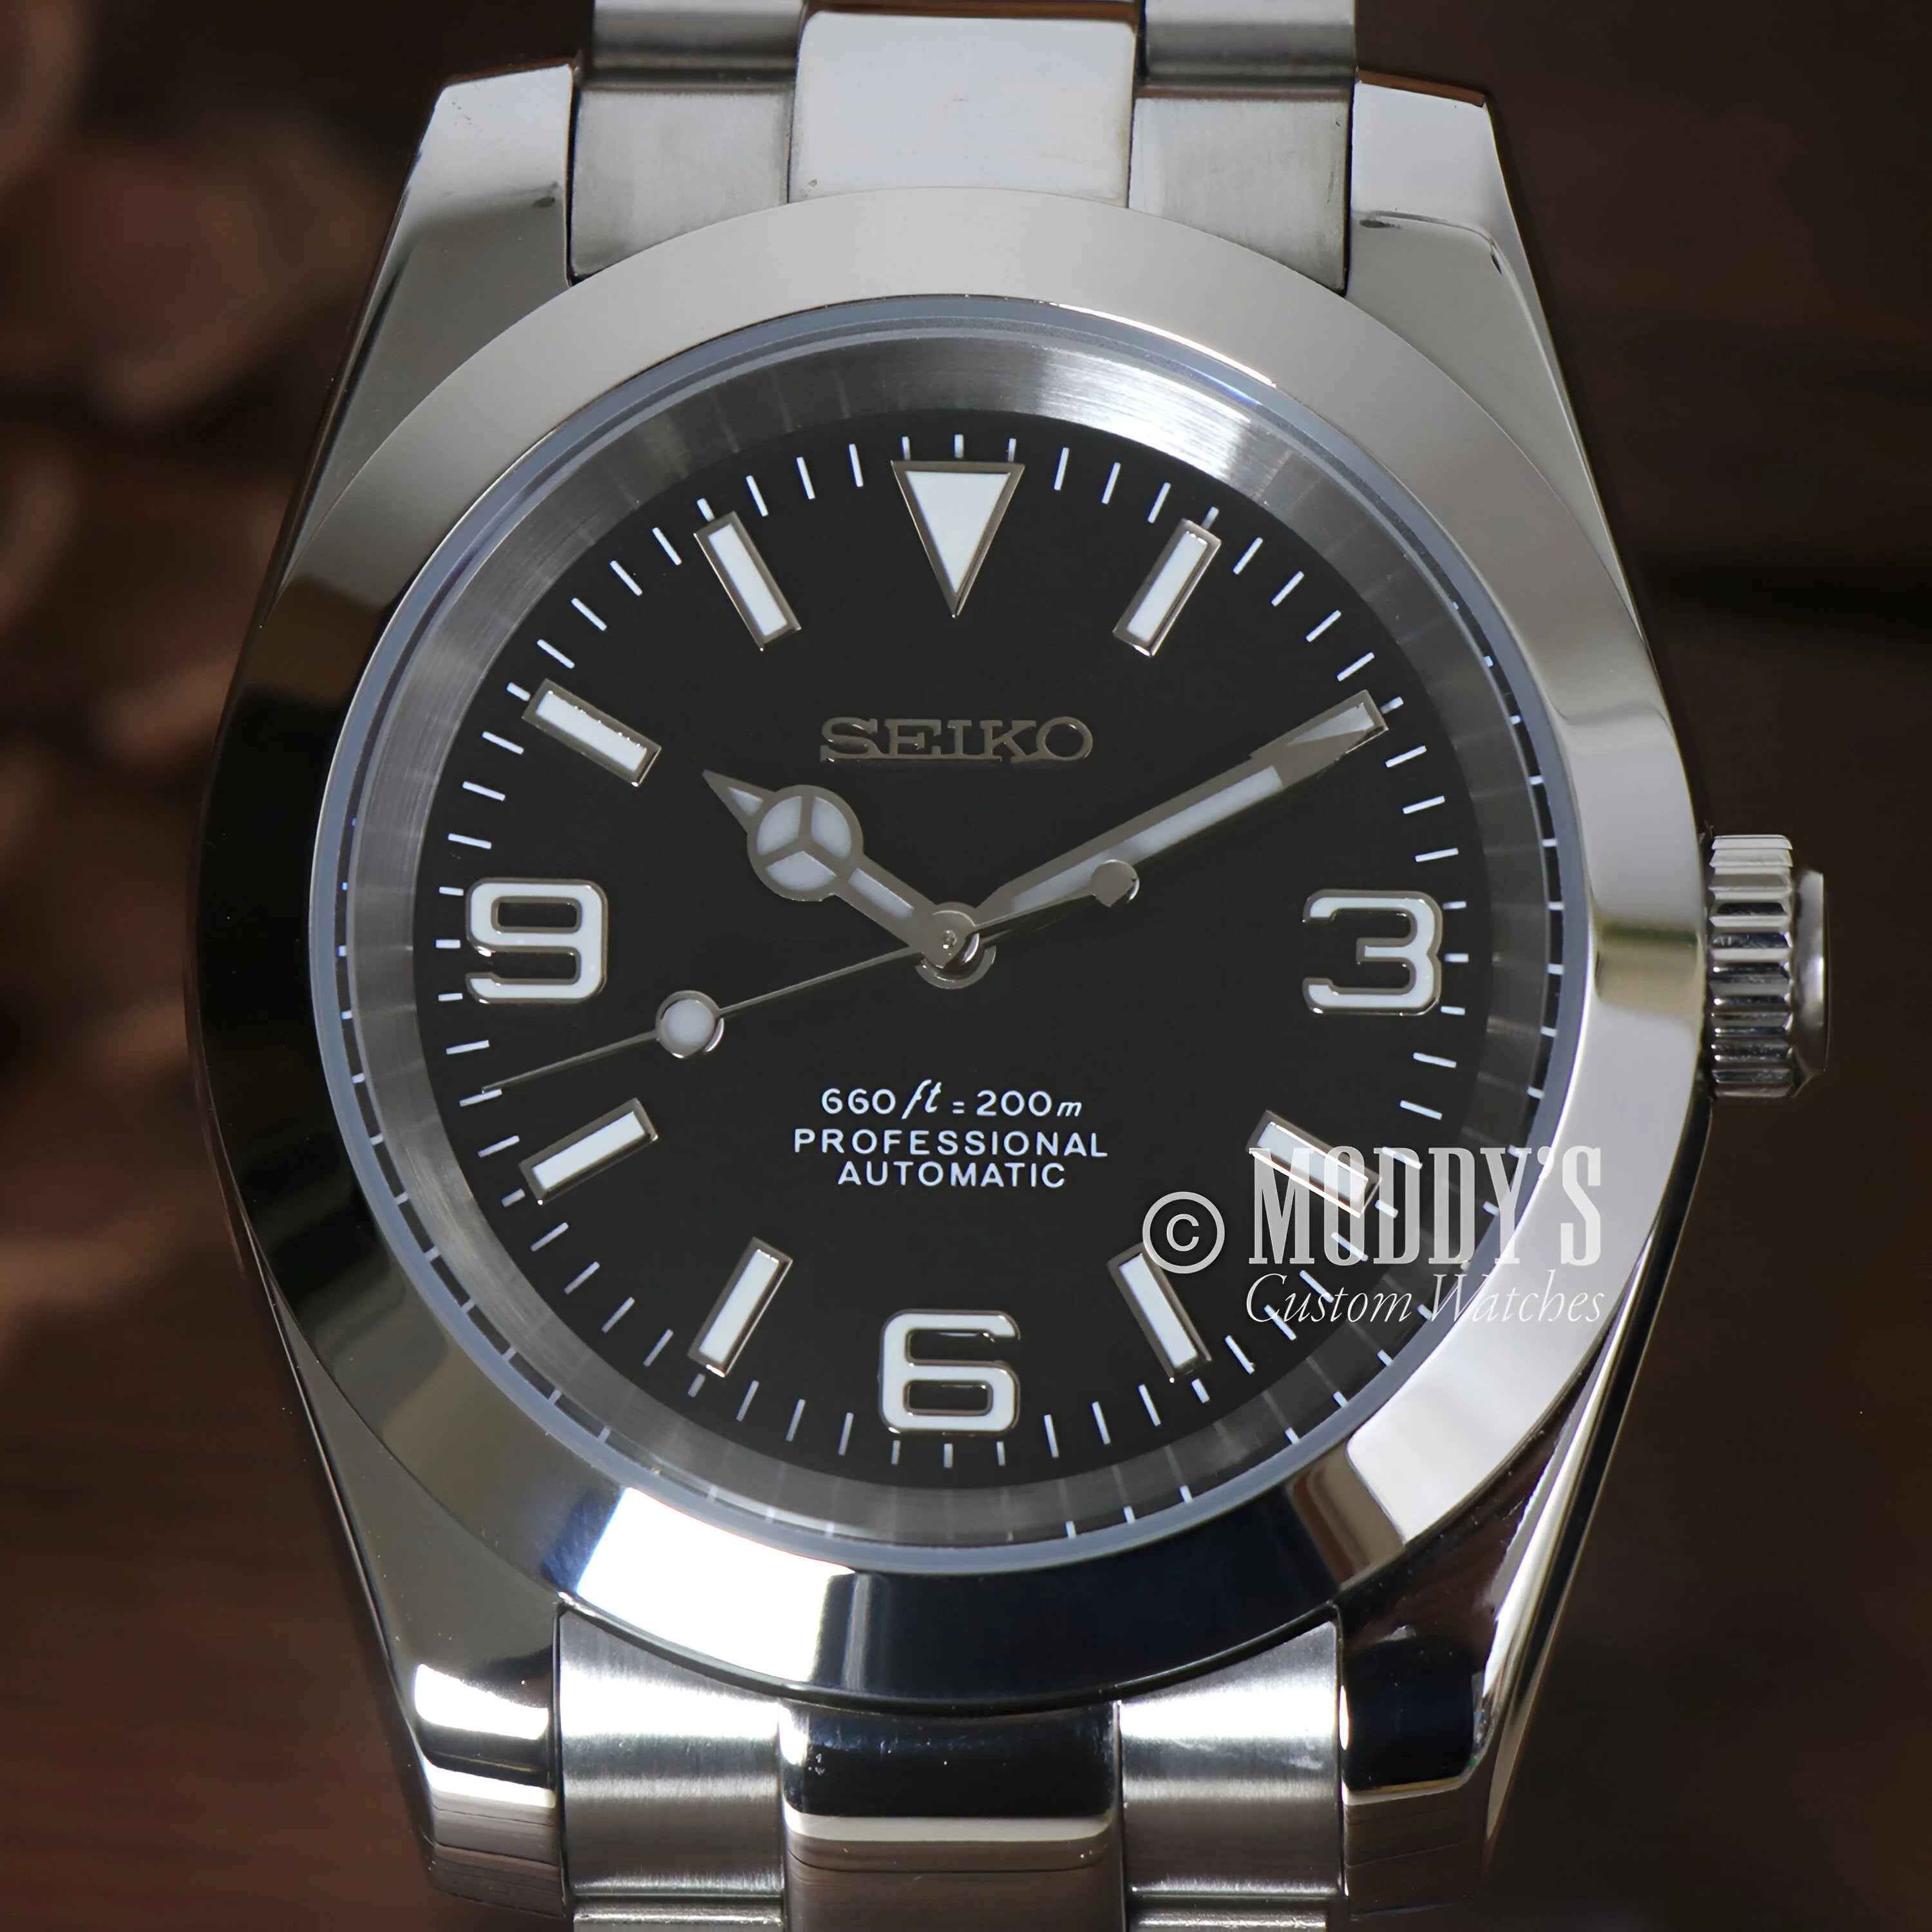 Oysteiko Black Explorer Seiko Mod Watch With Black Dial & Stainless Steel Bracelet